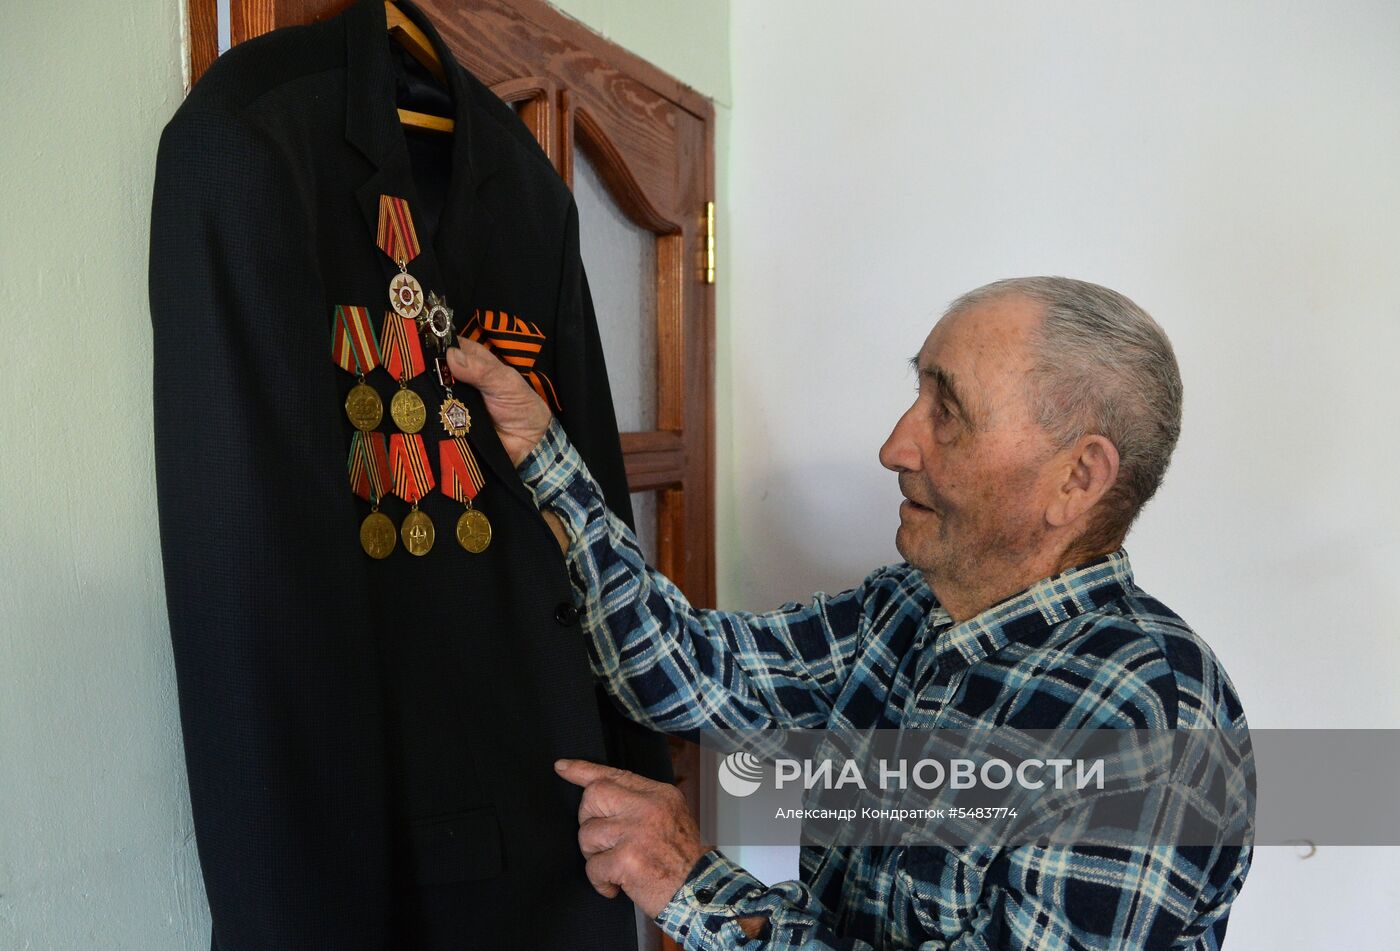 Ветеран ВОВ Шайяхмет Абдулзалилов из Челябинской области